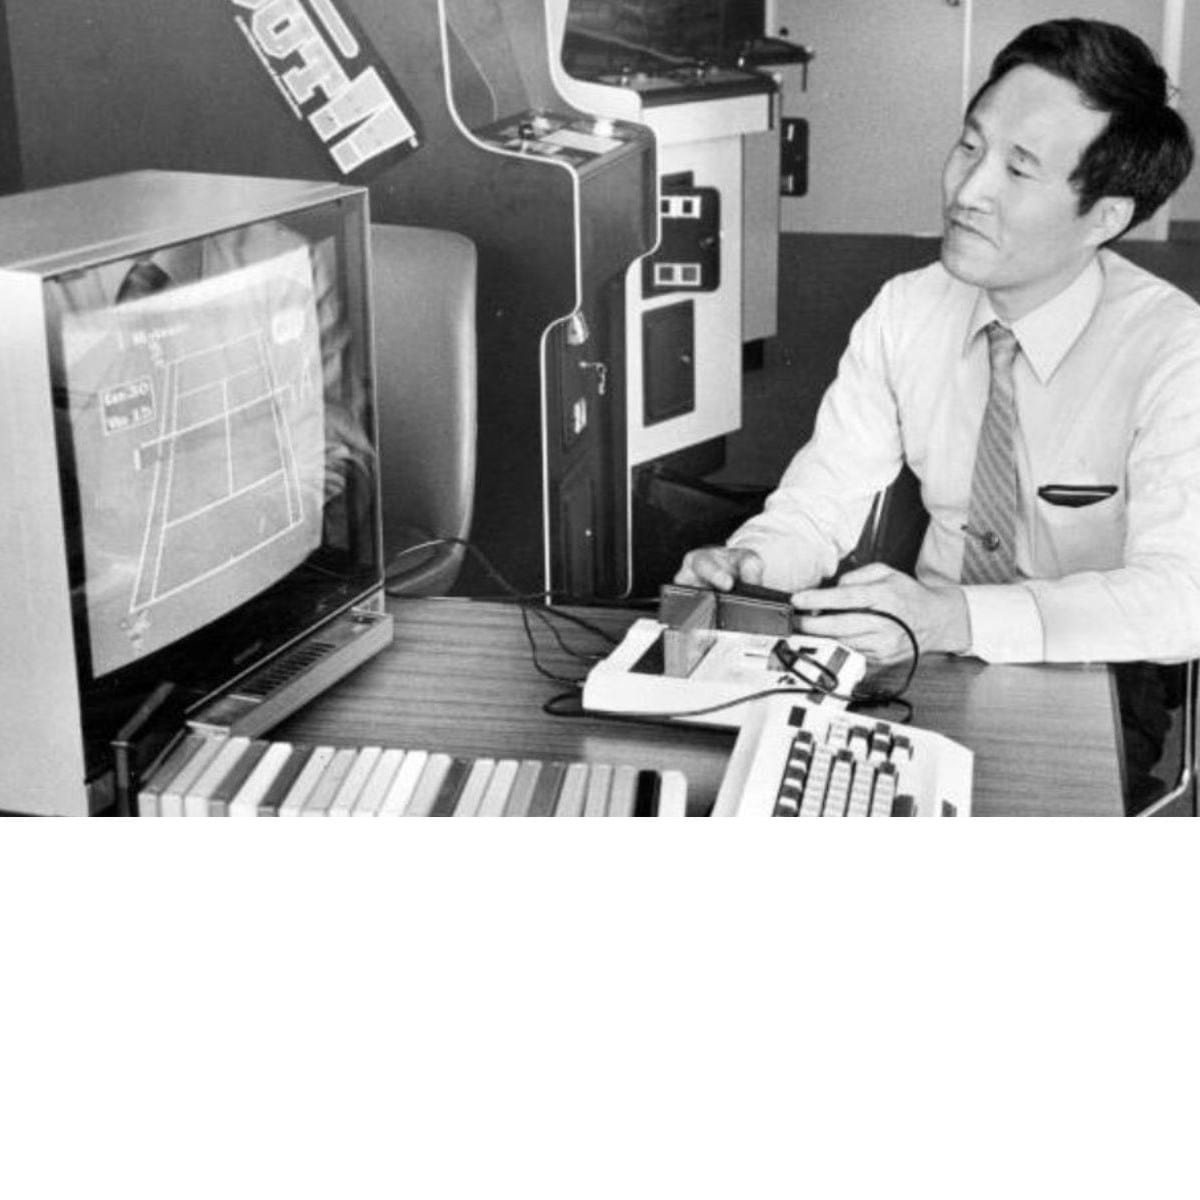 Engenheiro criador do Super Nintendo, Masayuki Uemura morre aos 78 anos